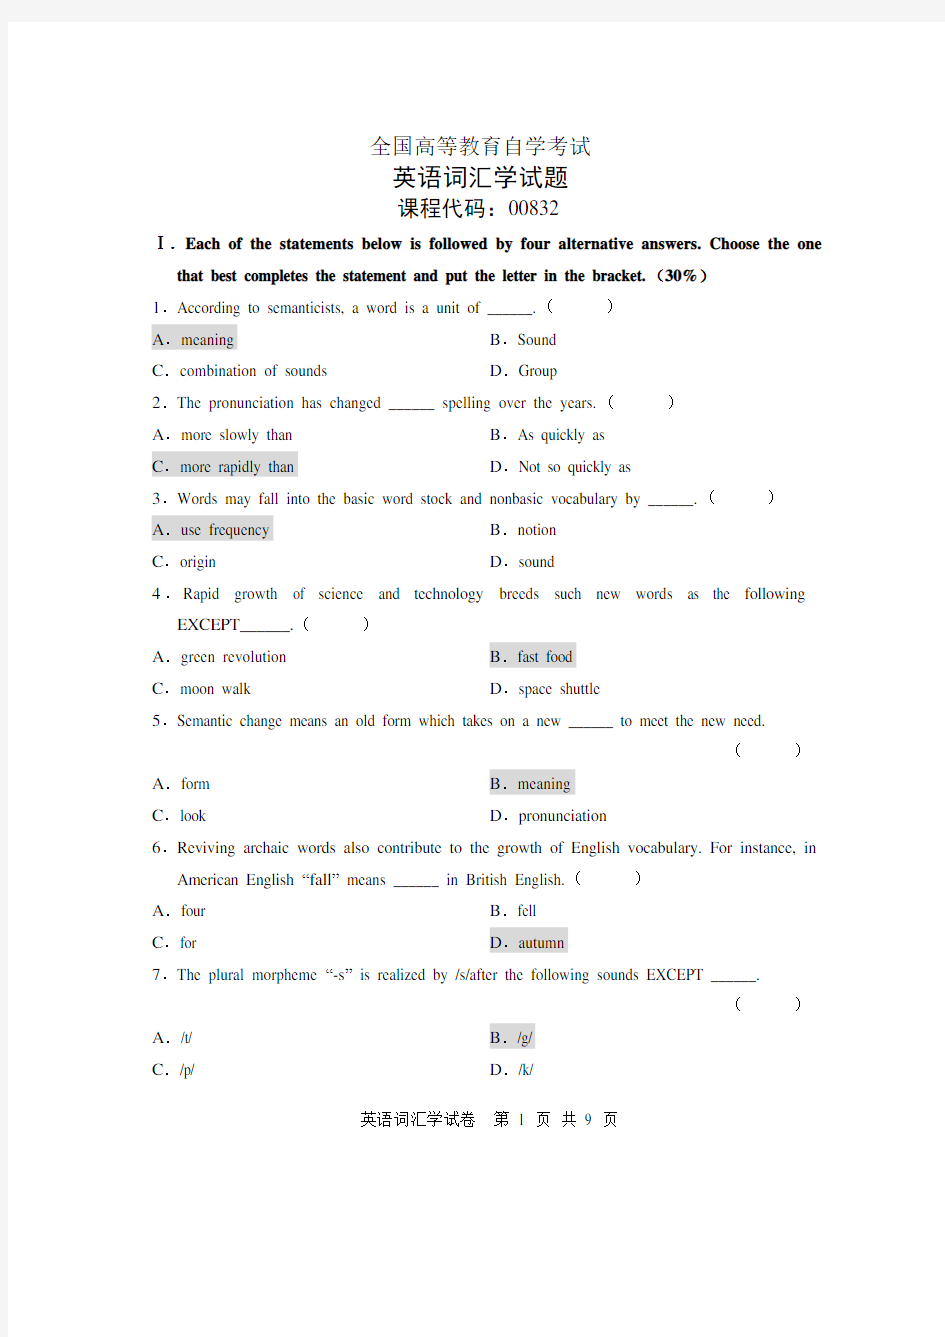 全国英语词汇学(00832)高等教育自学考试试题与答案